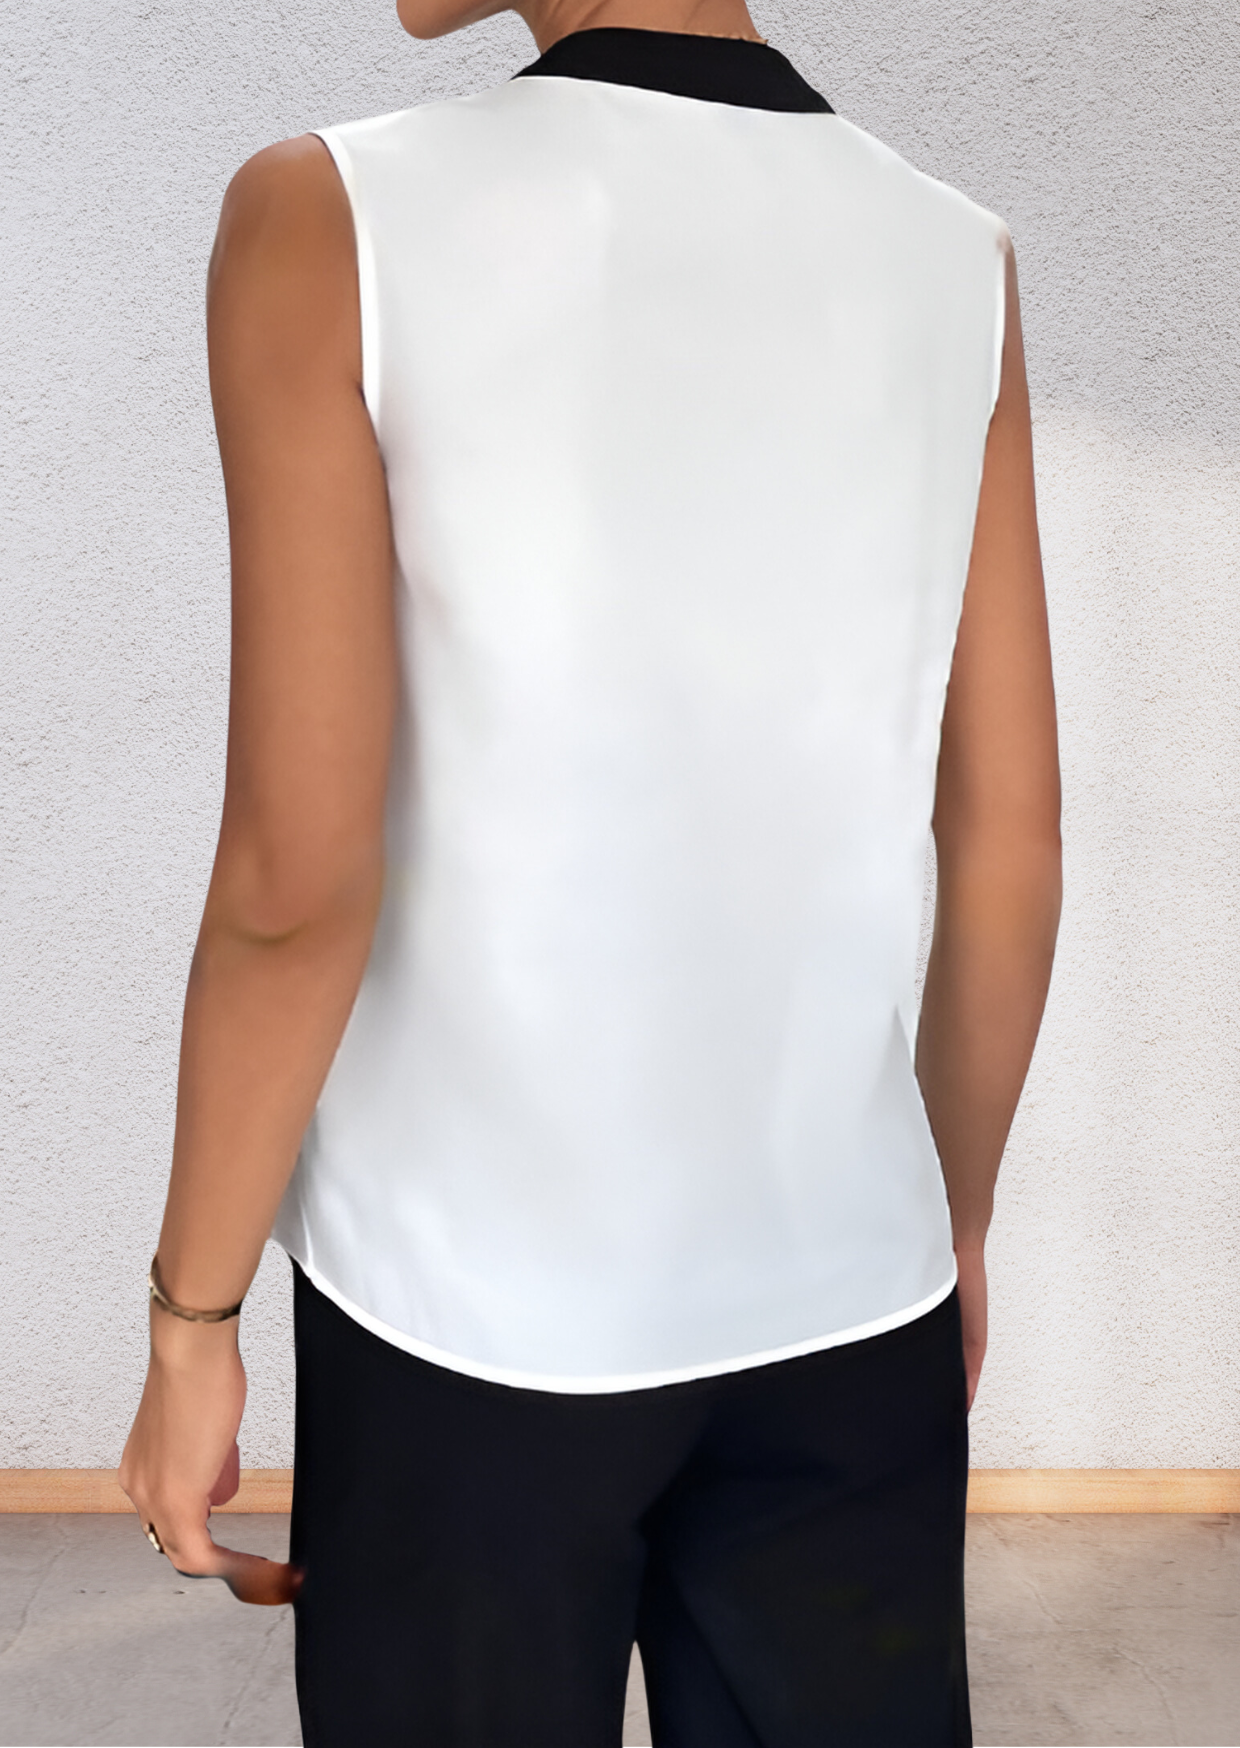 Formal White Sleeveless Shirt for Women